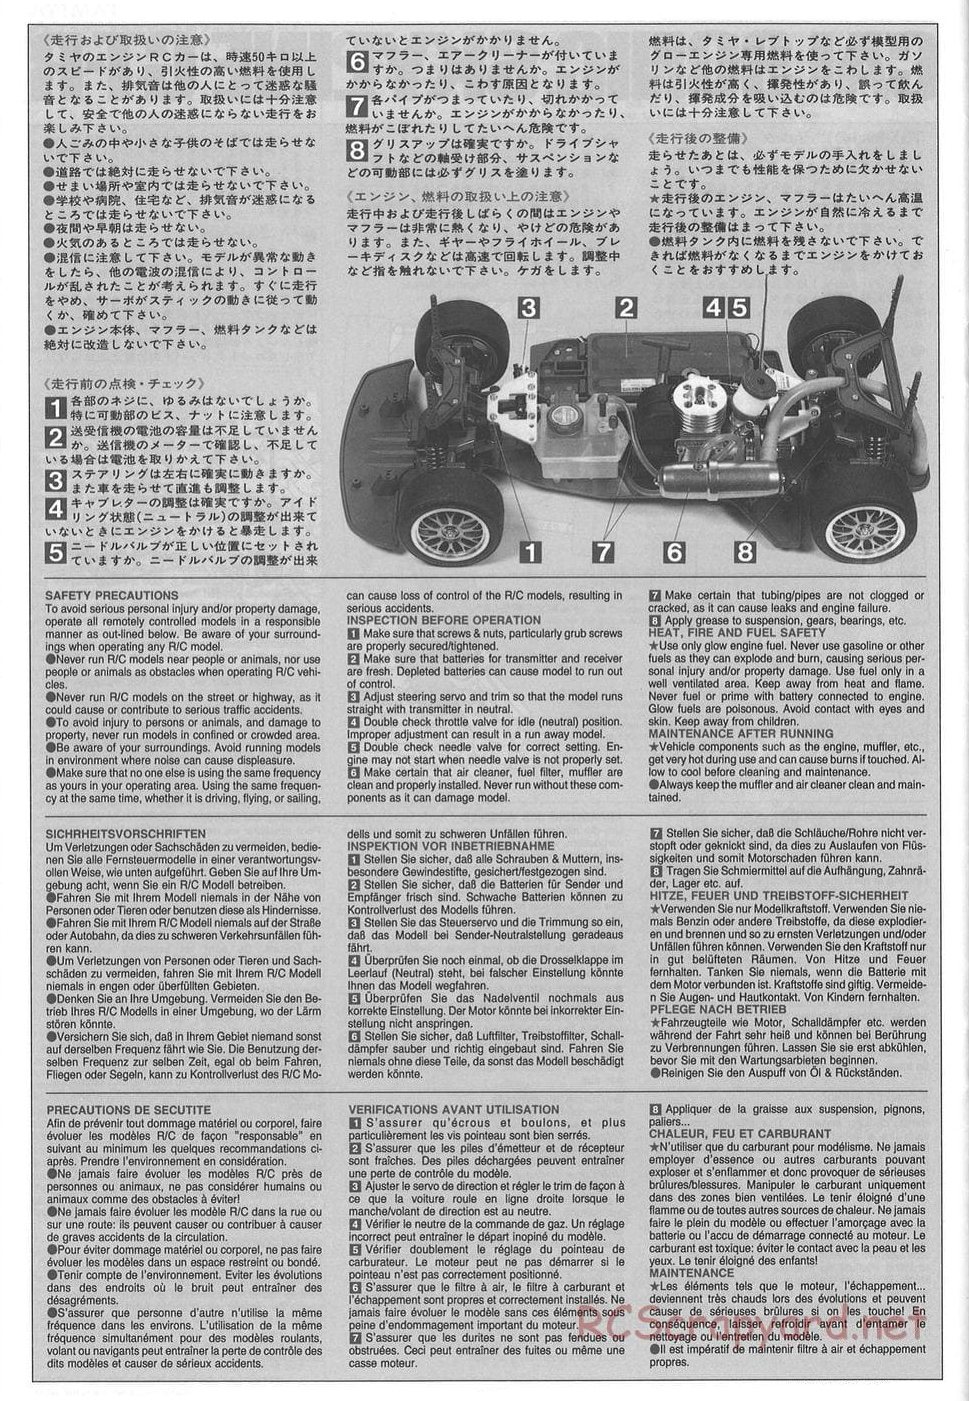 Tamiya - TGX Mk.1 Chassis - Manual - Page 23